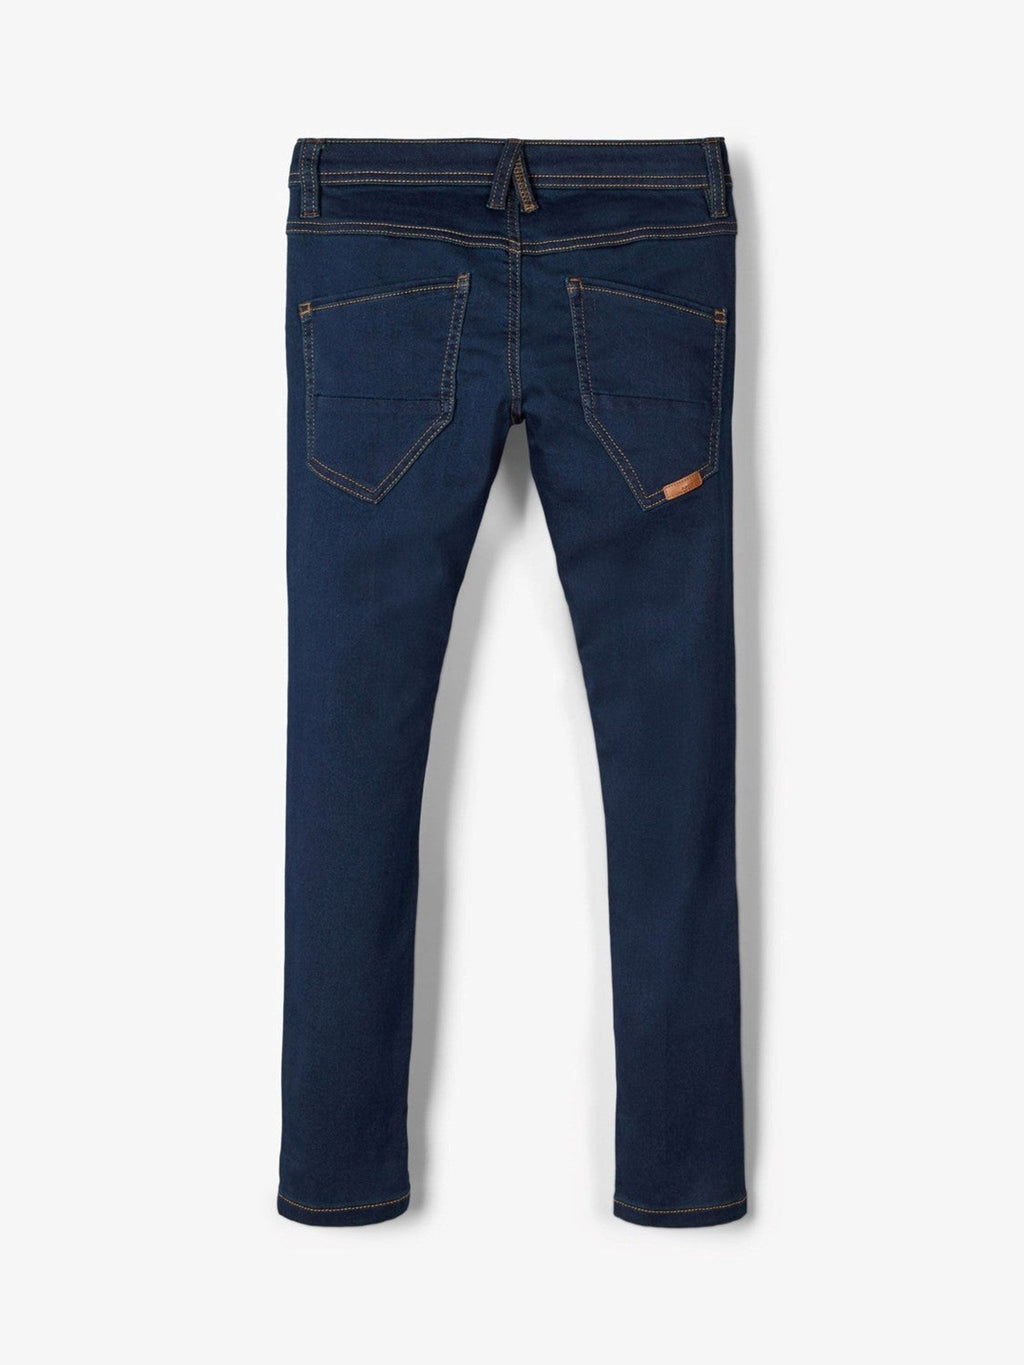 Jeans robin elastici - denim blu scuro